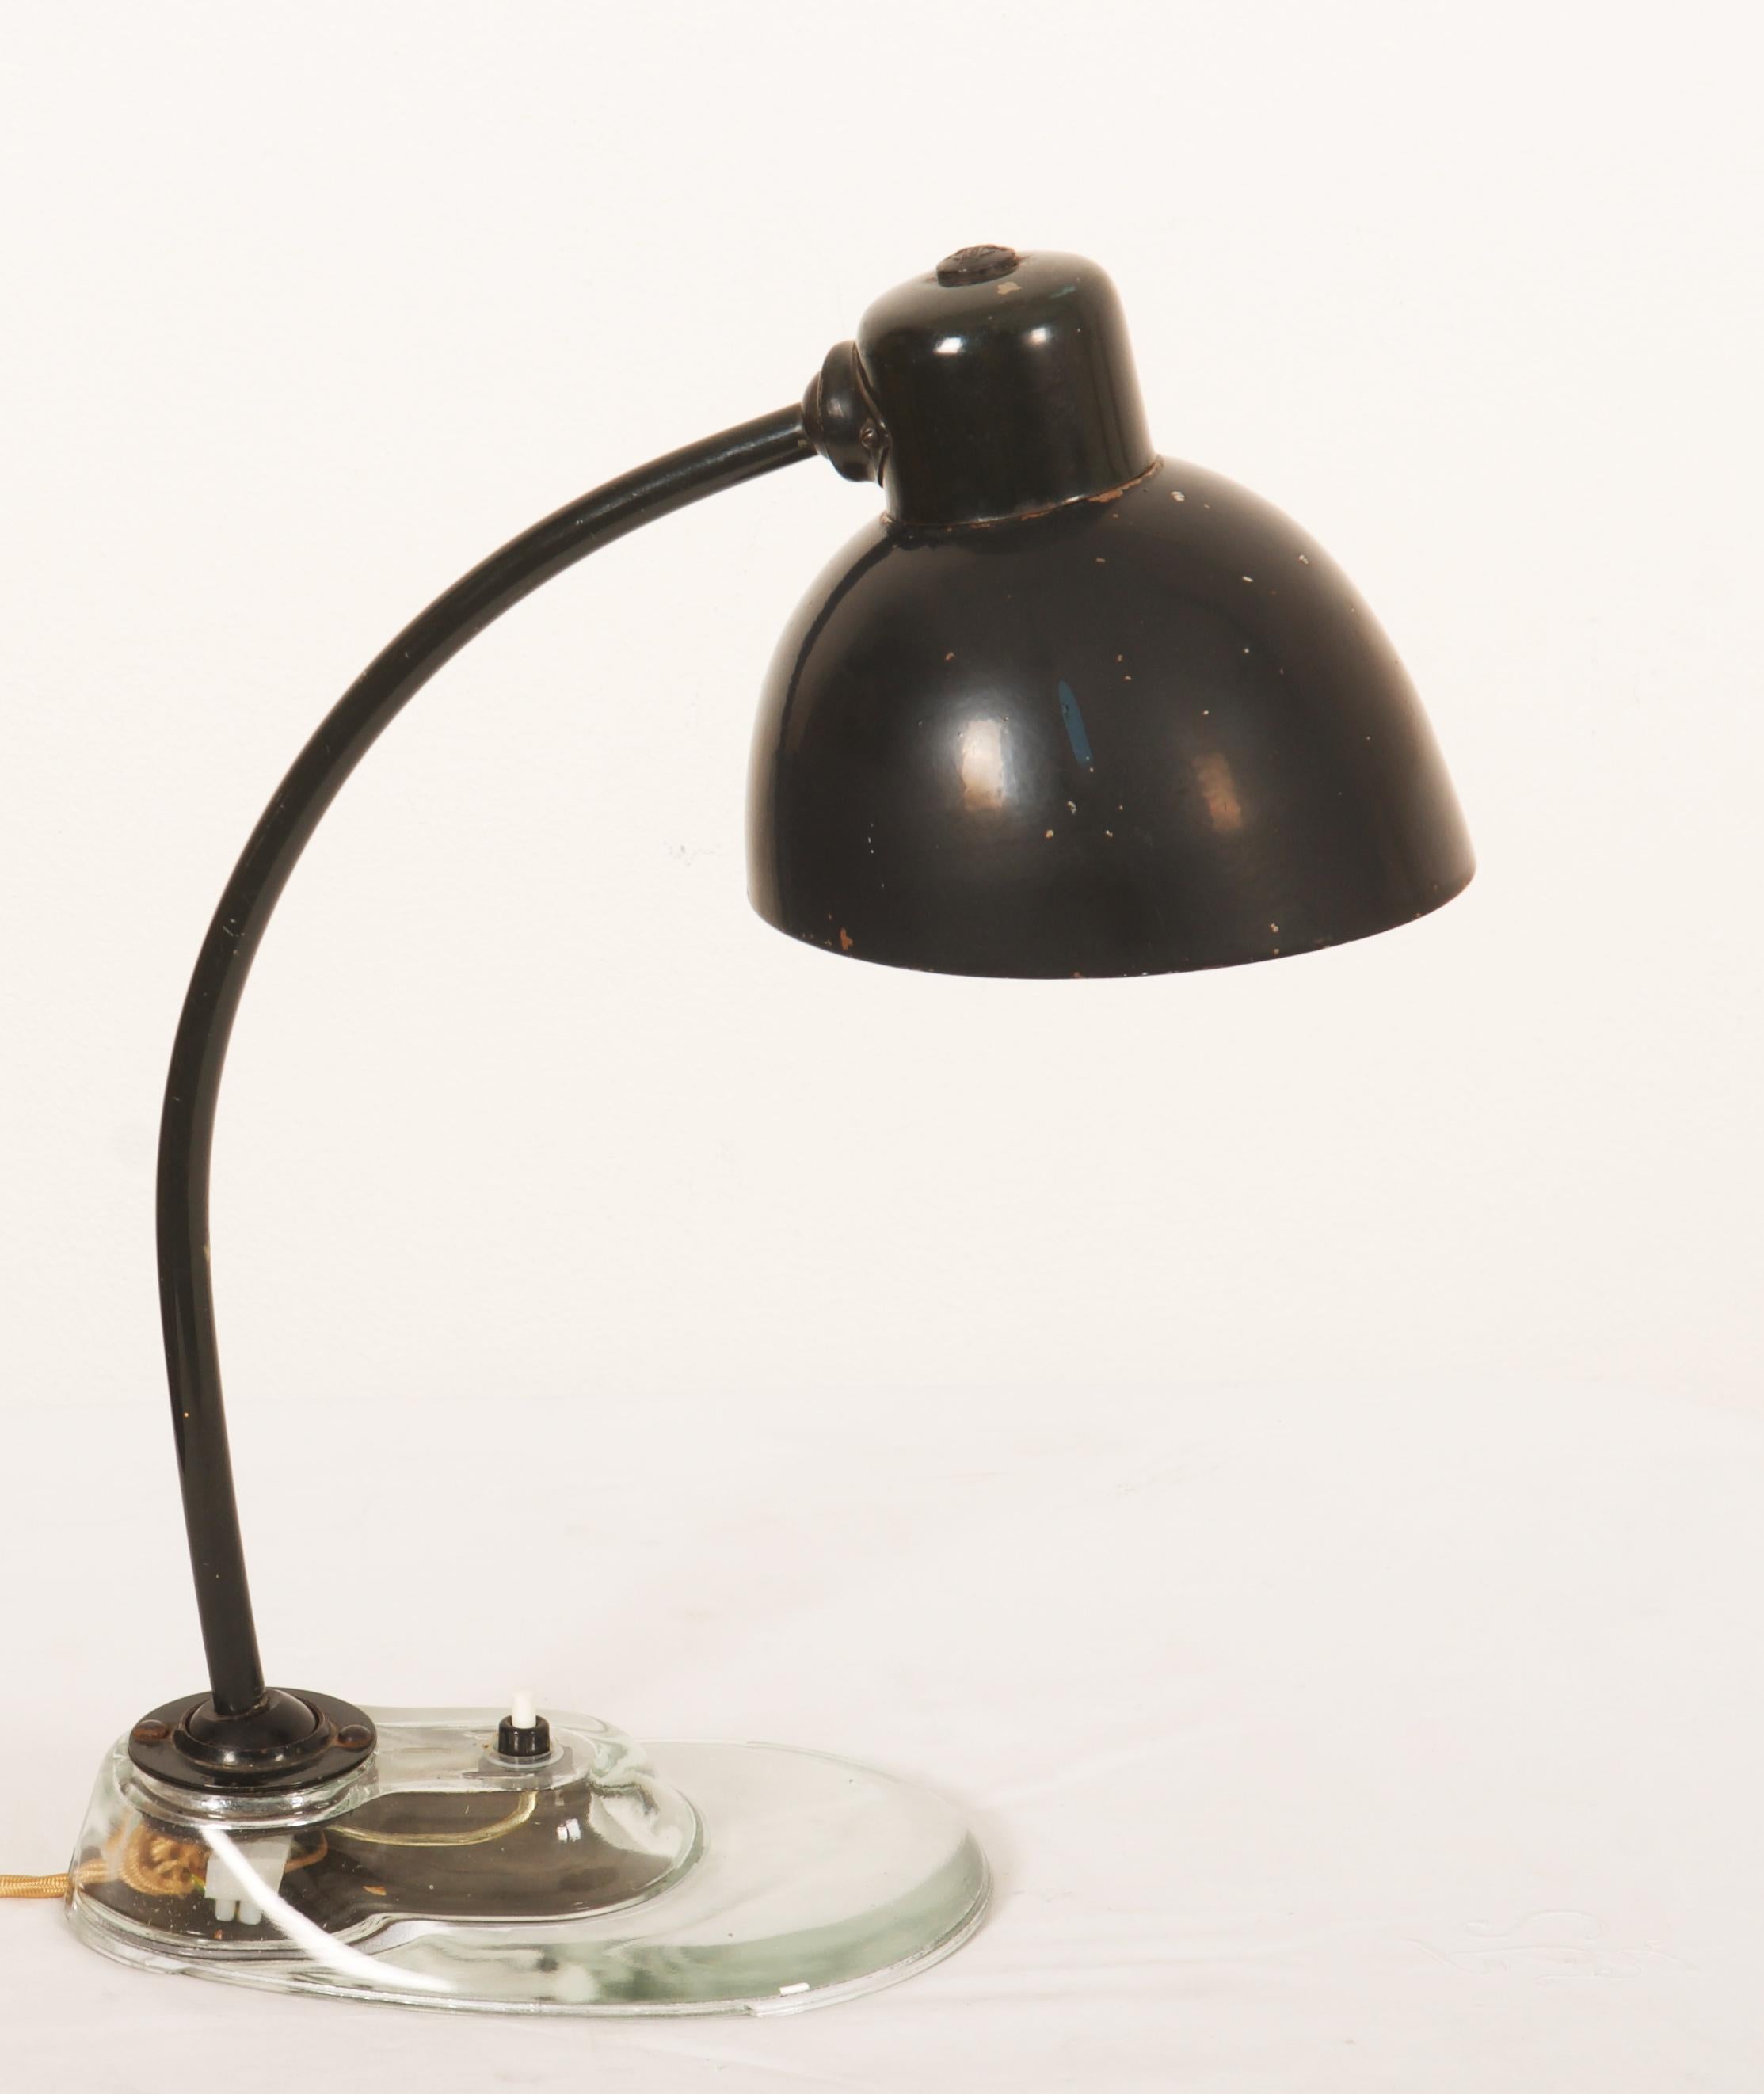 Magnifique lampe de bureau iconique du Bauhaus conçue par Marianne Brandt pour Kandem Leuchtenbau Leipzig. Il est doté d'une base en verre typique, ce qui en fait le modèle le plus recherché, équipé d'une douille E27. Merveilleux état d'origine avec